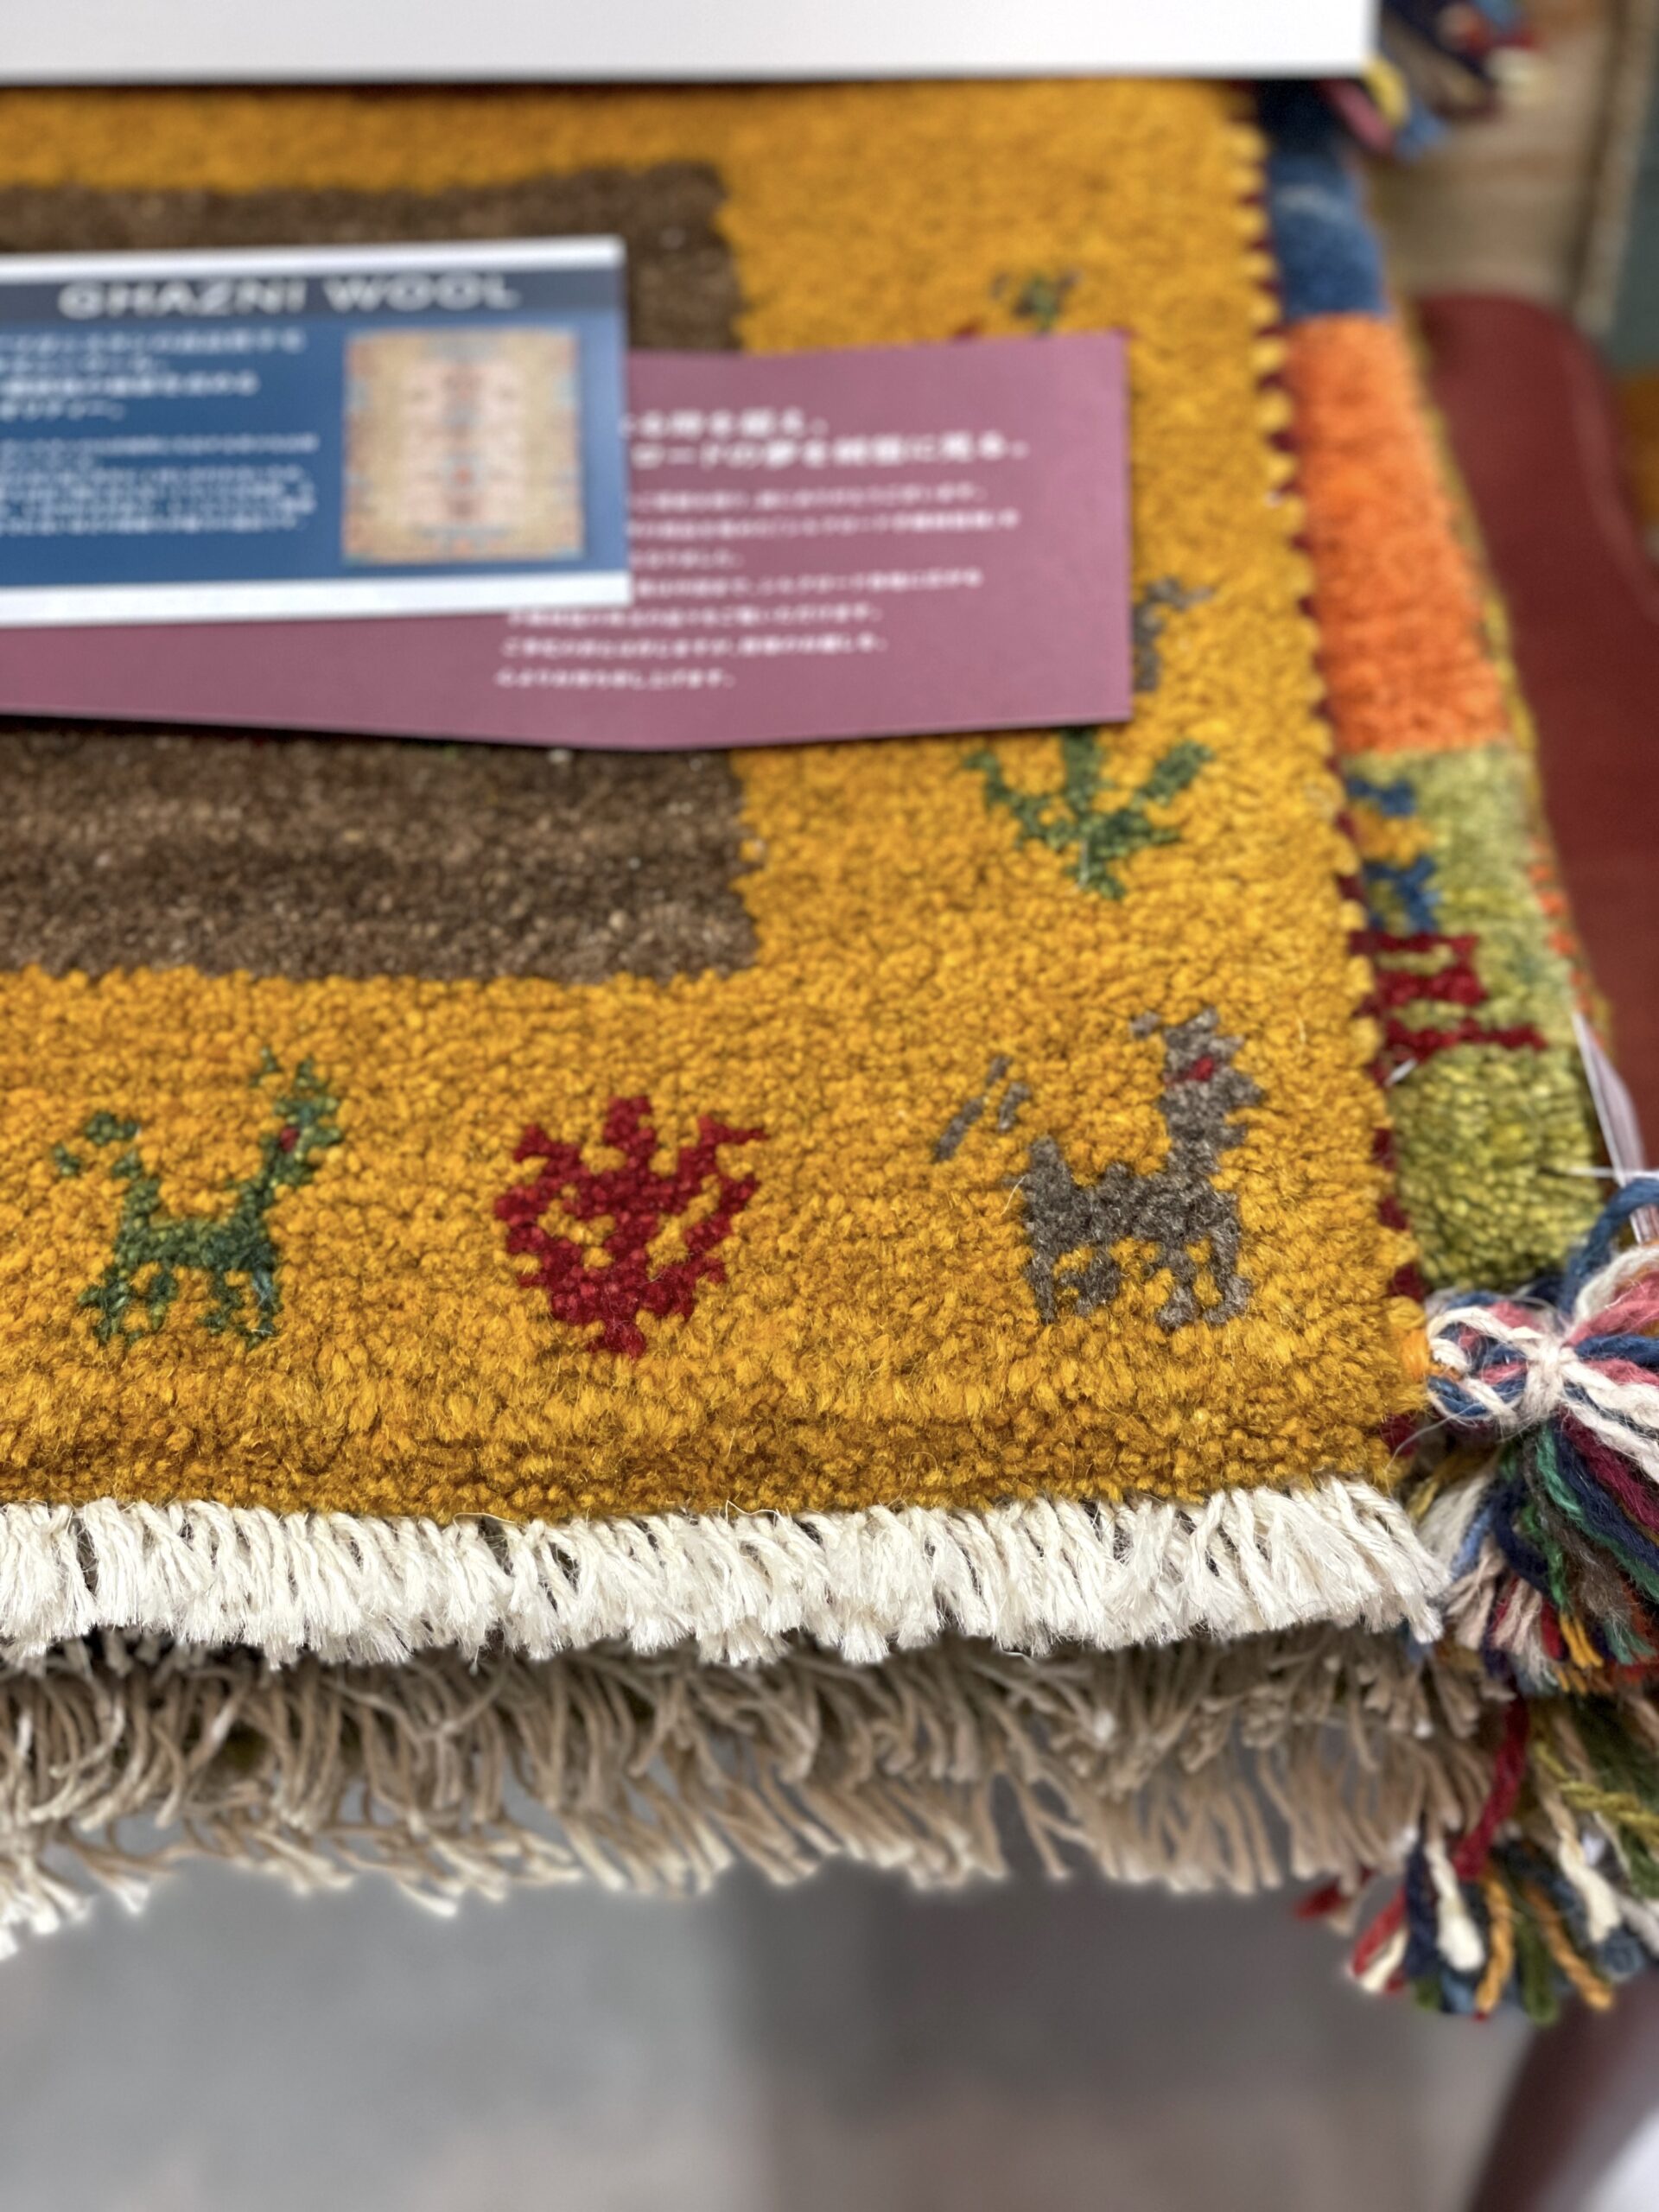 シルクロード手織絨毯展のご案内 | カーテンショップ森の風